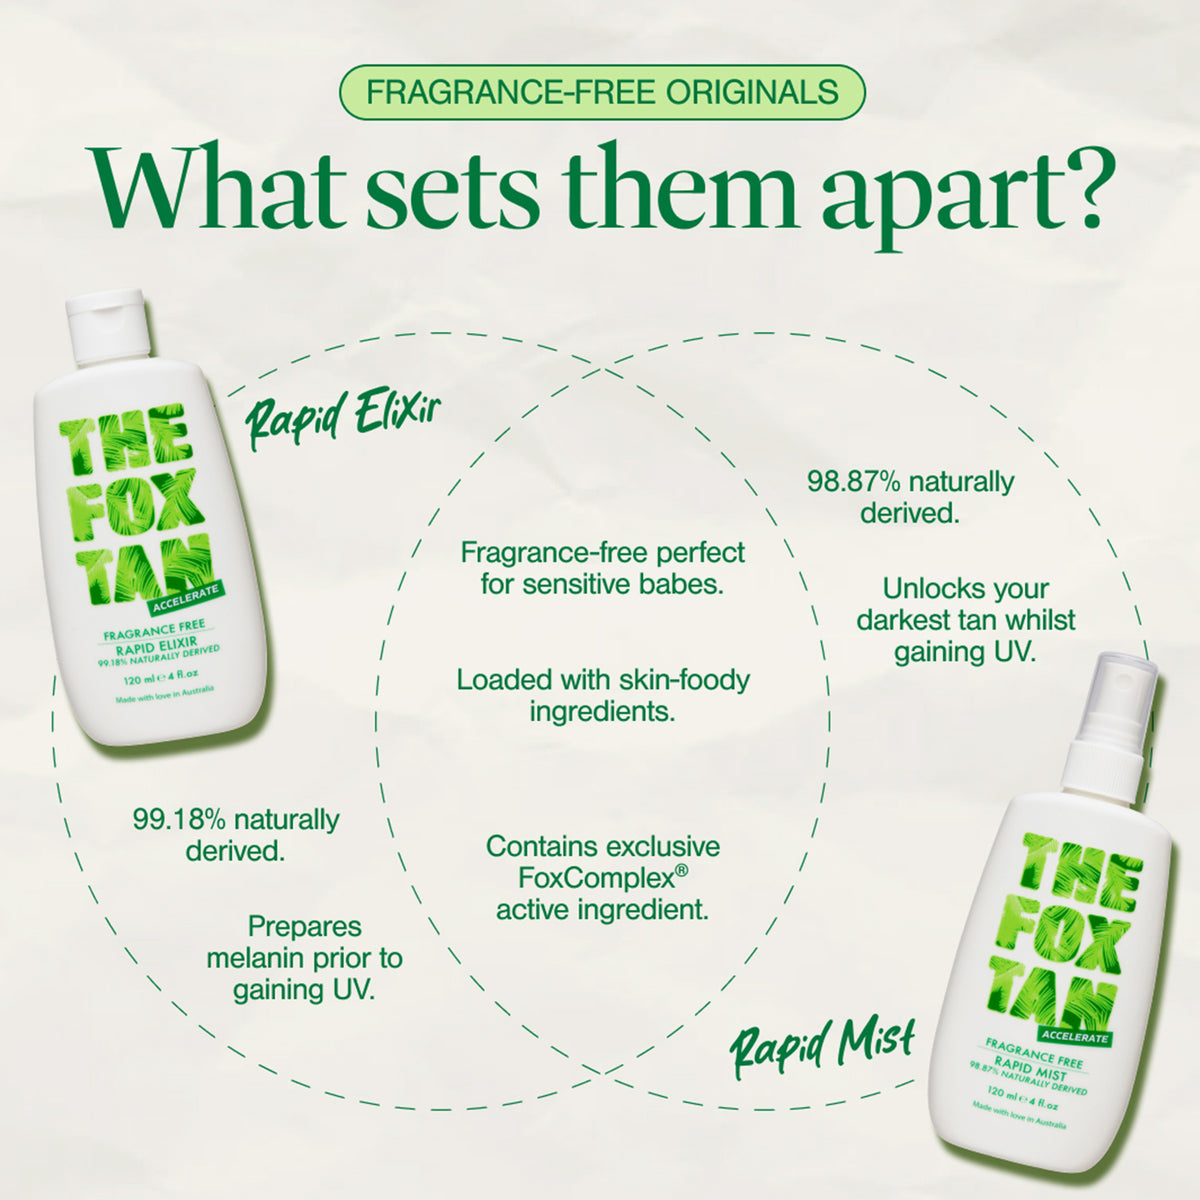 Fragrance Free Originals Bundle